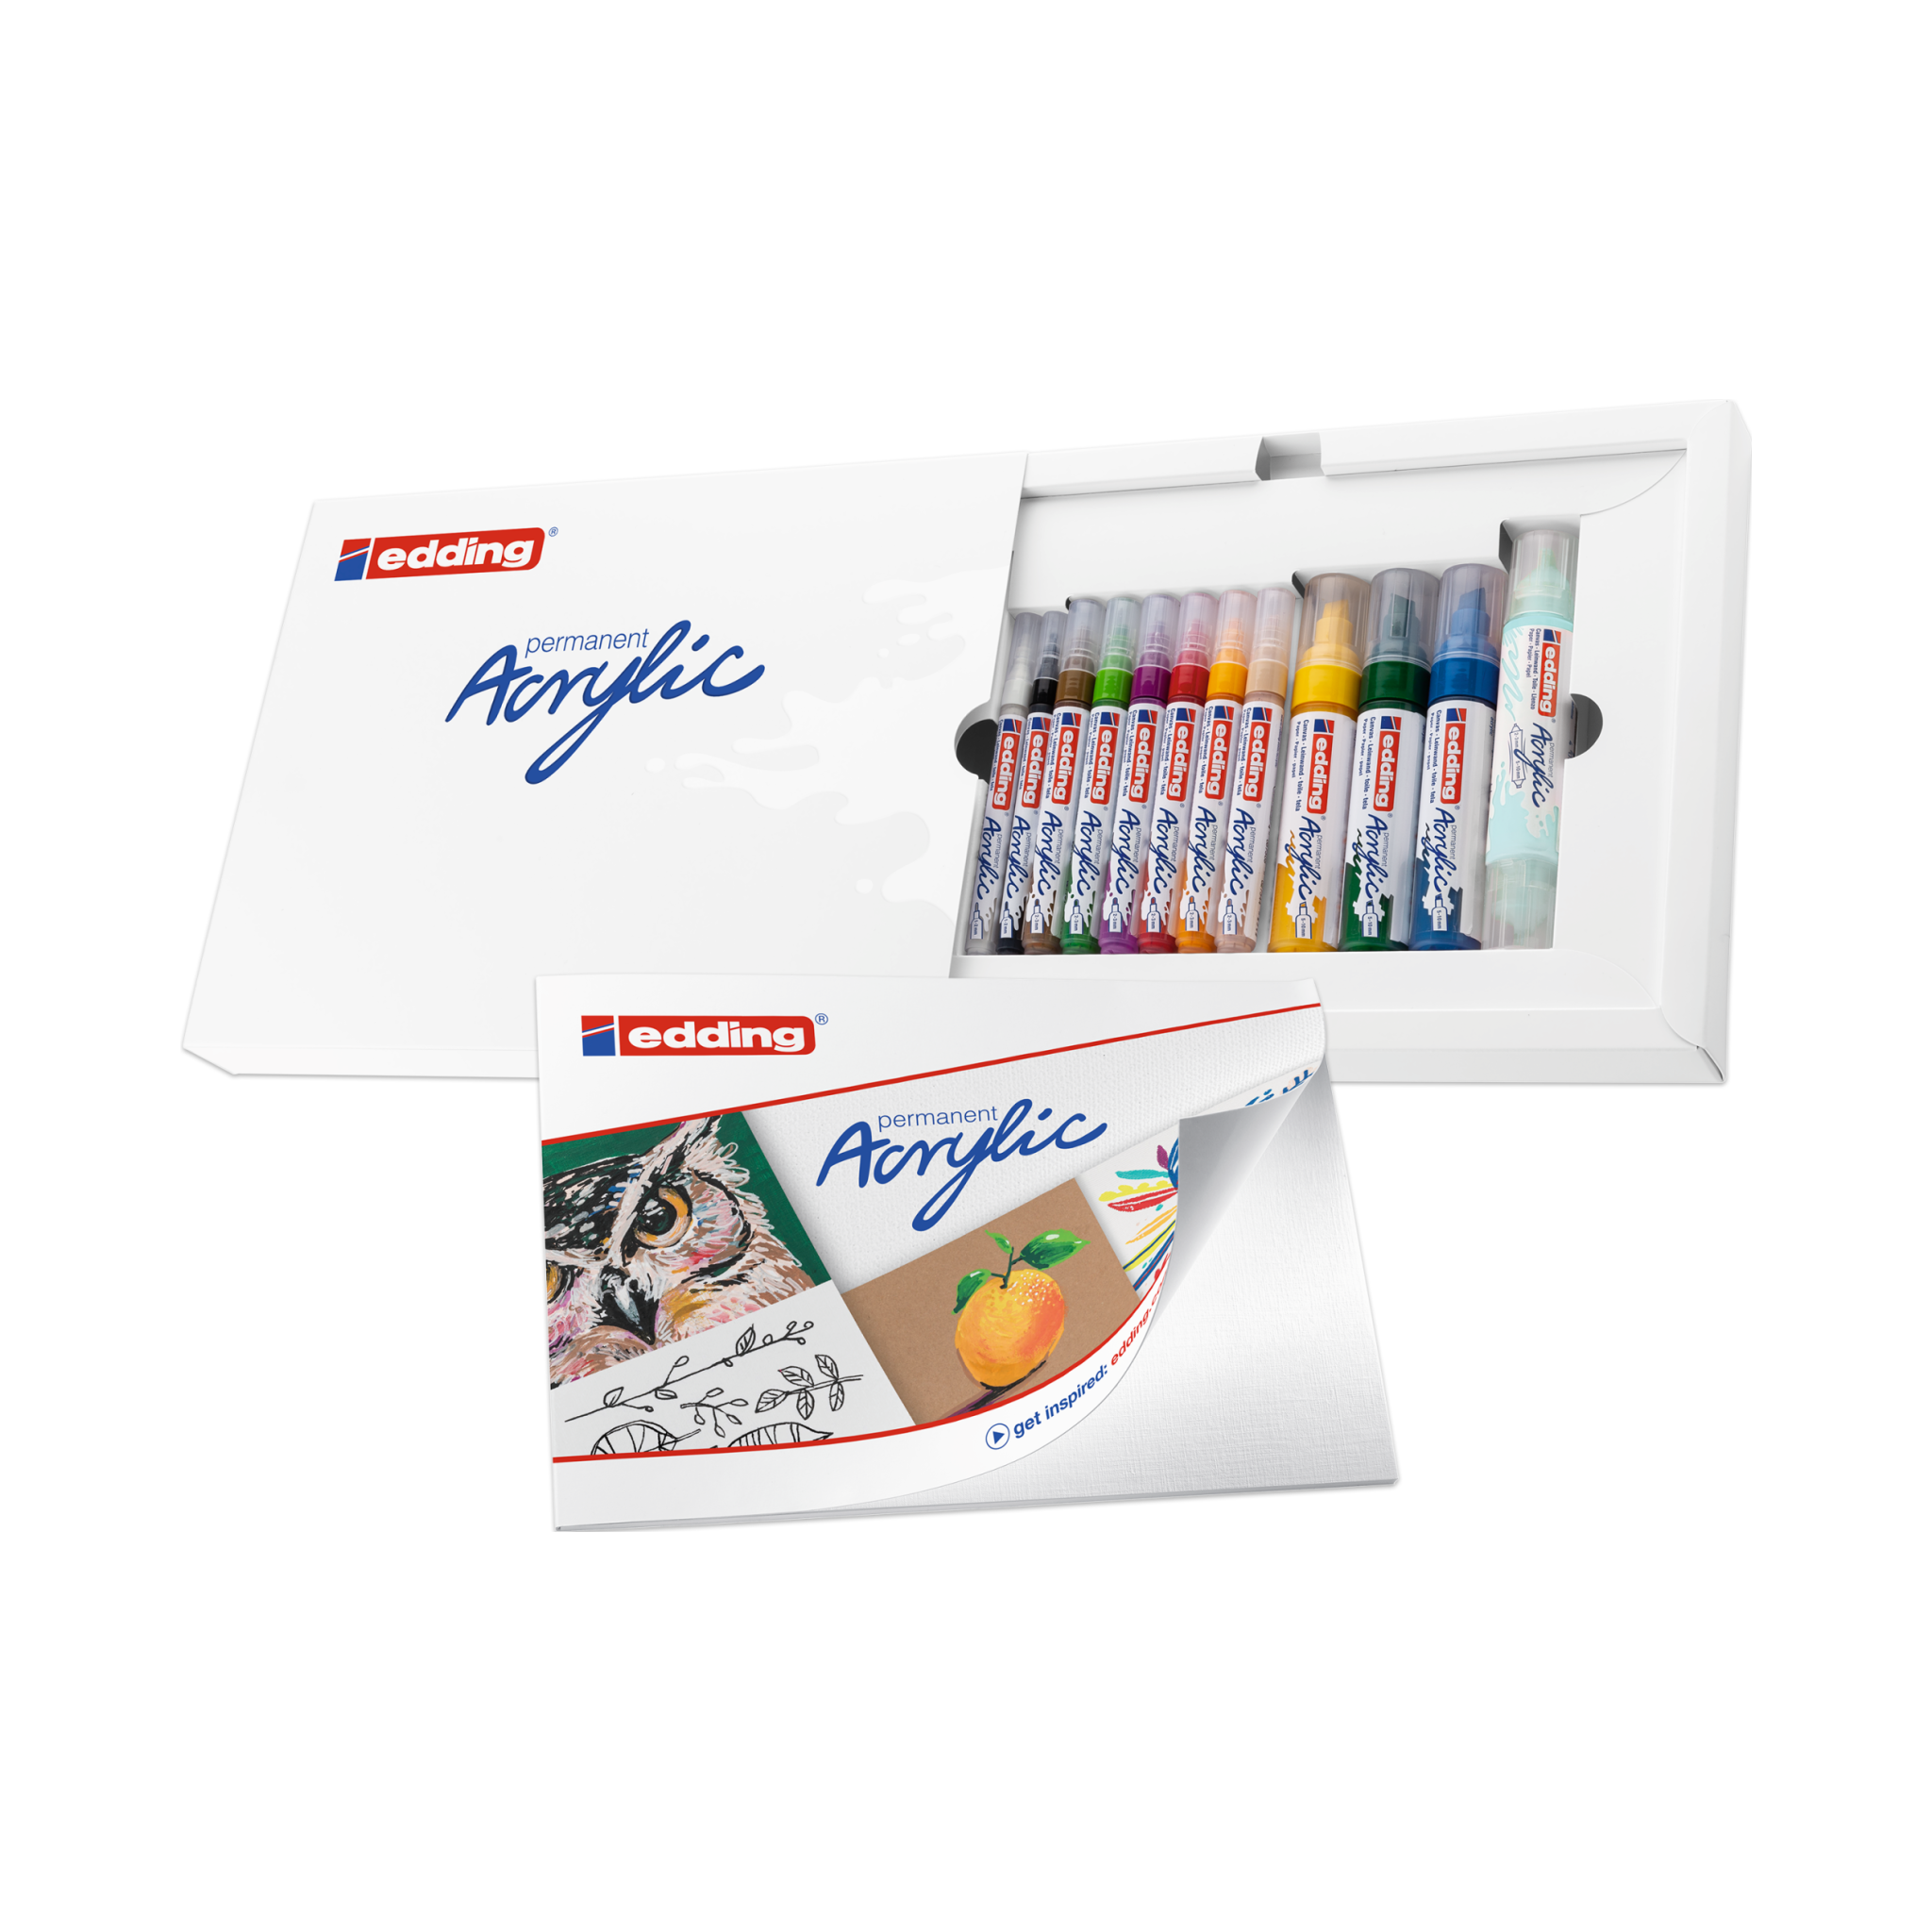 Ein Satz edding Acryl Starterset Basic-Acrylmalstifte in einer offenen Box mit verschiedenen sichtbaren Farben. Das Verpackungsdesign zeigt lebendige Illustrationen, die mit dem Produkt auf Leinwand gezeichnet wurden.